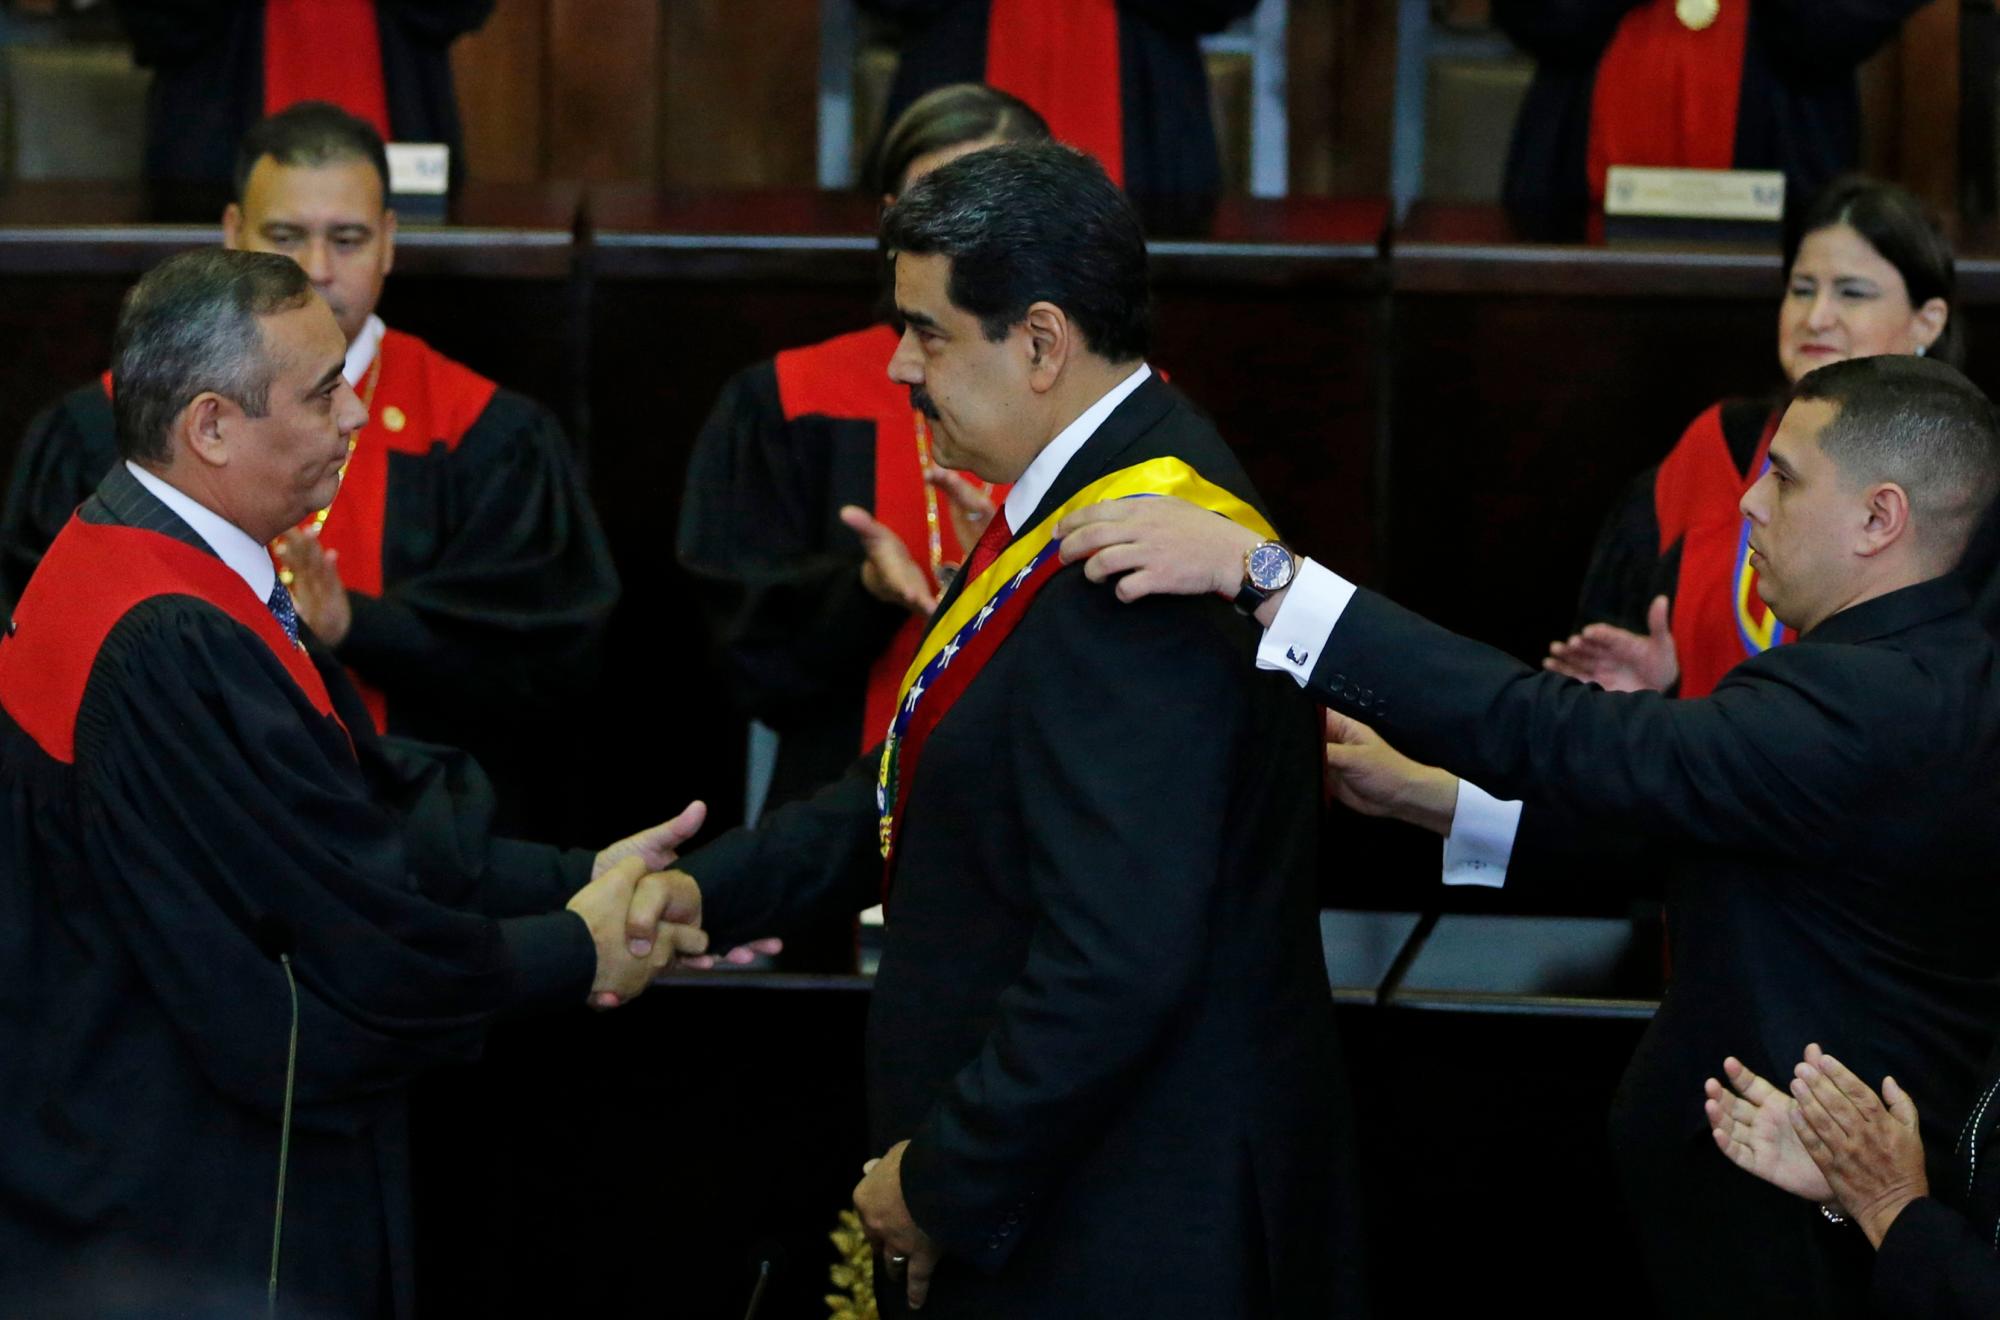 El presidente de Venezuela, Nicolás Maduro, en el centro, el presidente de la Corte Suprema, Maikel Moreno, la banda presidencial y el jurado de Caracas, Venezuela, el jueves 10 de enero de 2019.